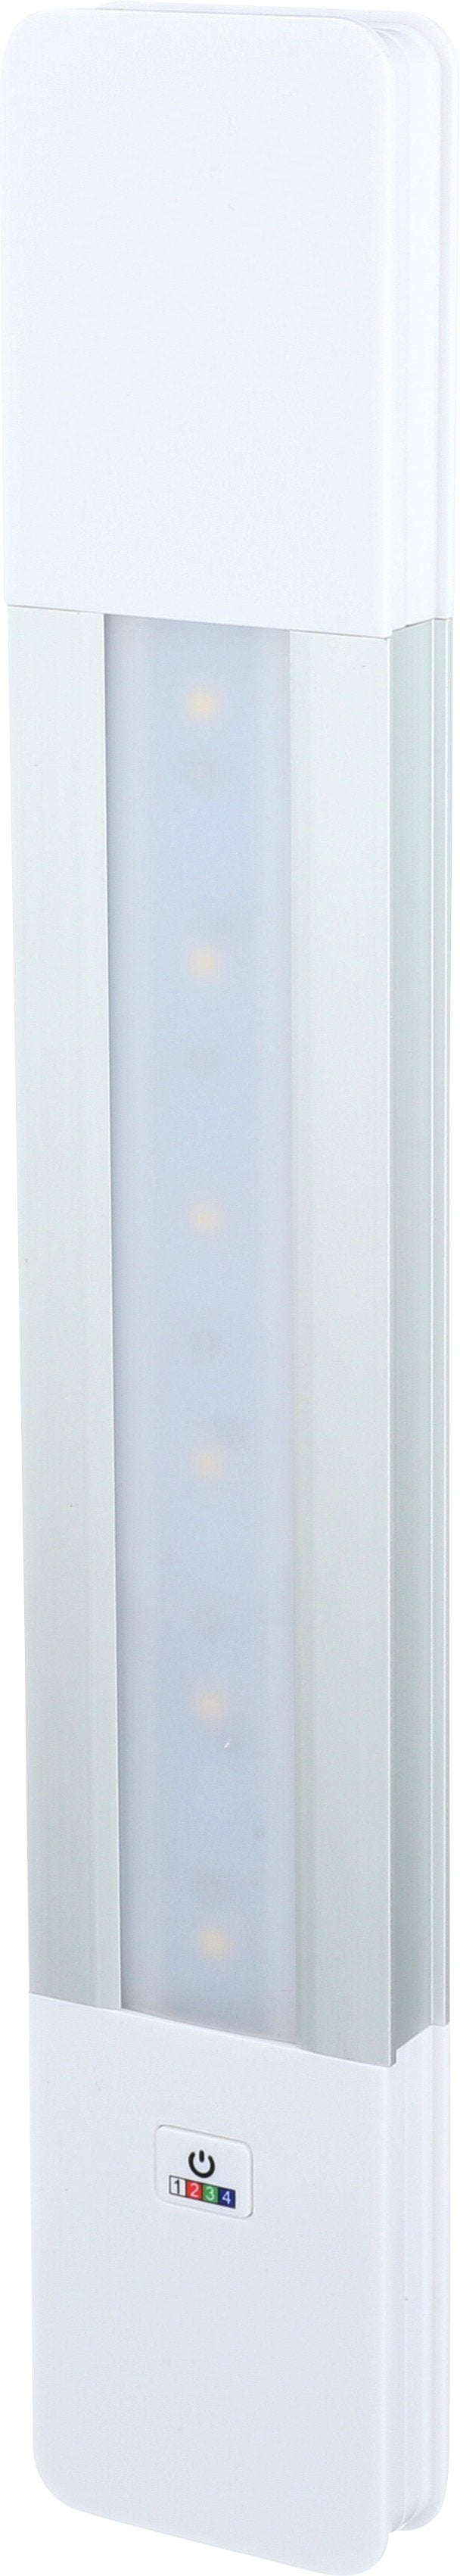 Bria LED Bar Light RGB with Remote | BL-BR33RGB-SW